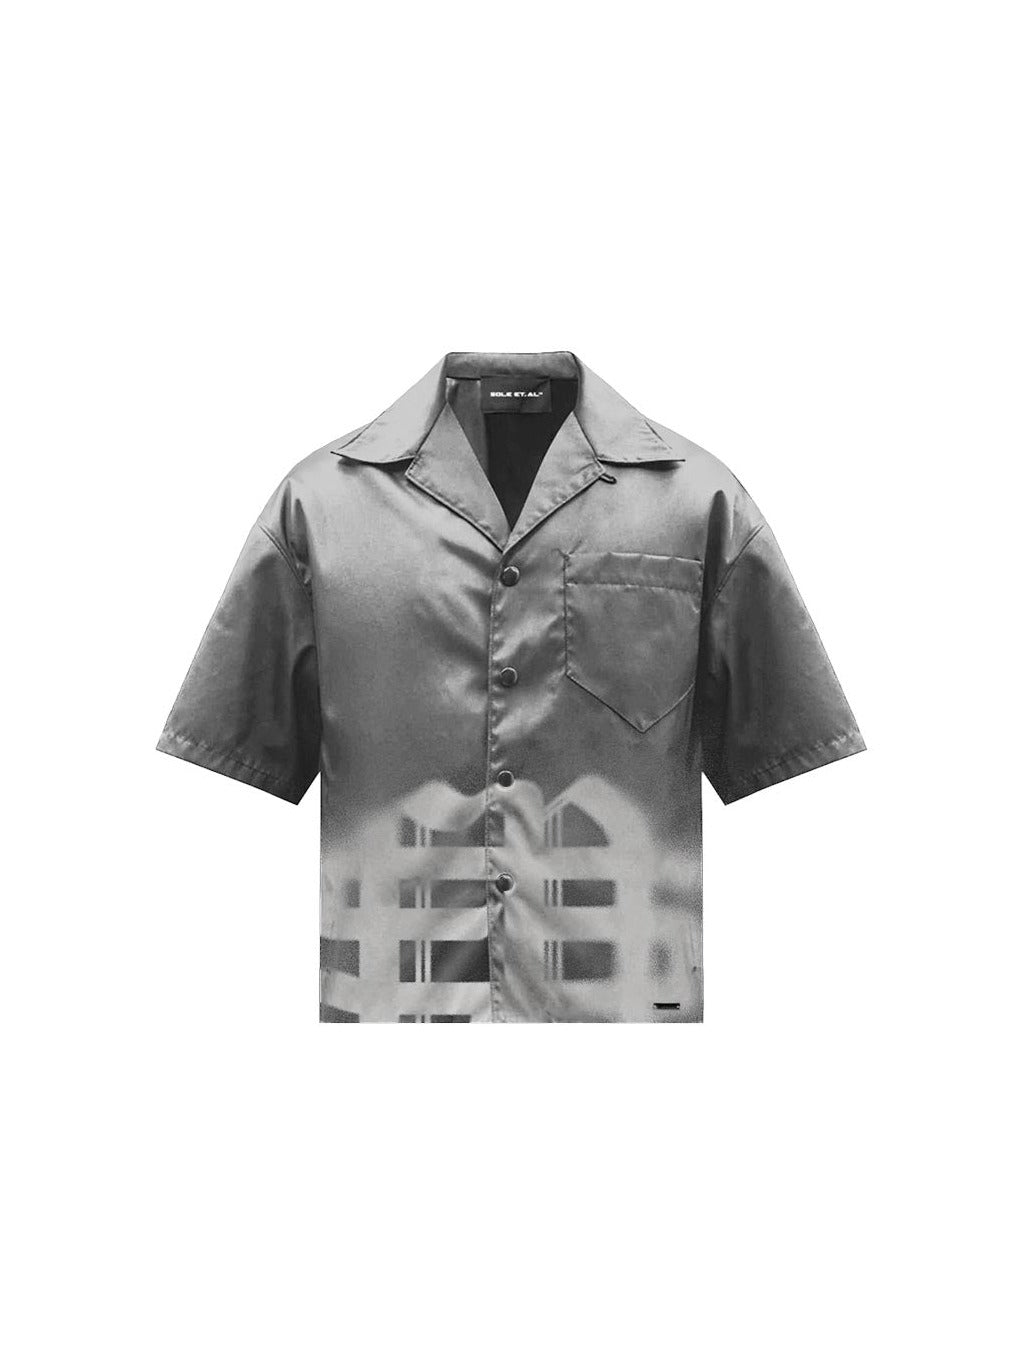 Sole et. Al Metro Identity Silk Shirt : Grey